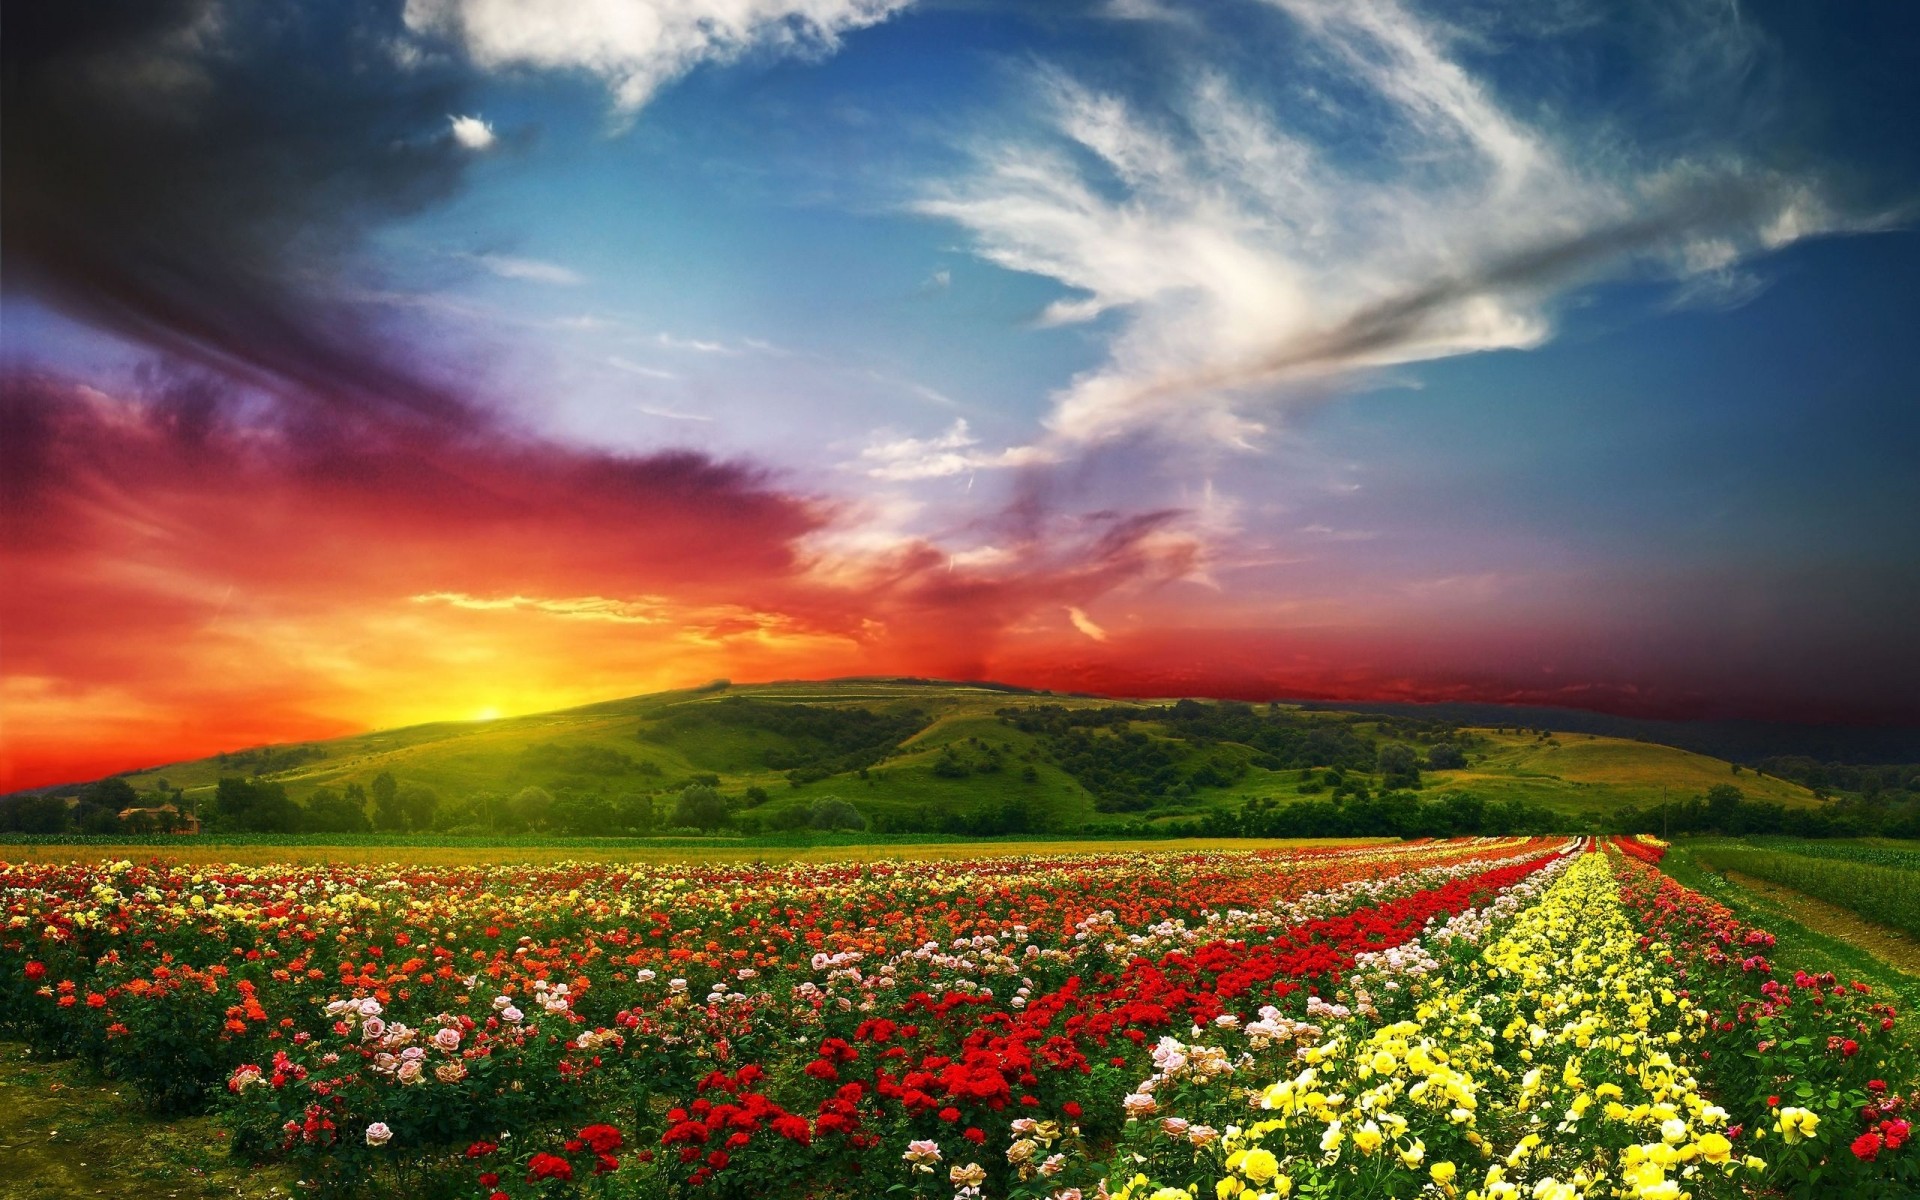 пейзажи цветок пейзаж небо природа поле на открытом воздухе сельских закат трава сельское хозяйство сельской местности возделываемые земли сенокос солнце лето дрч холм облака